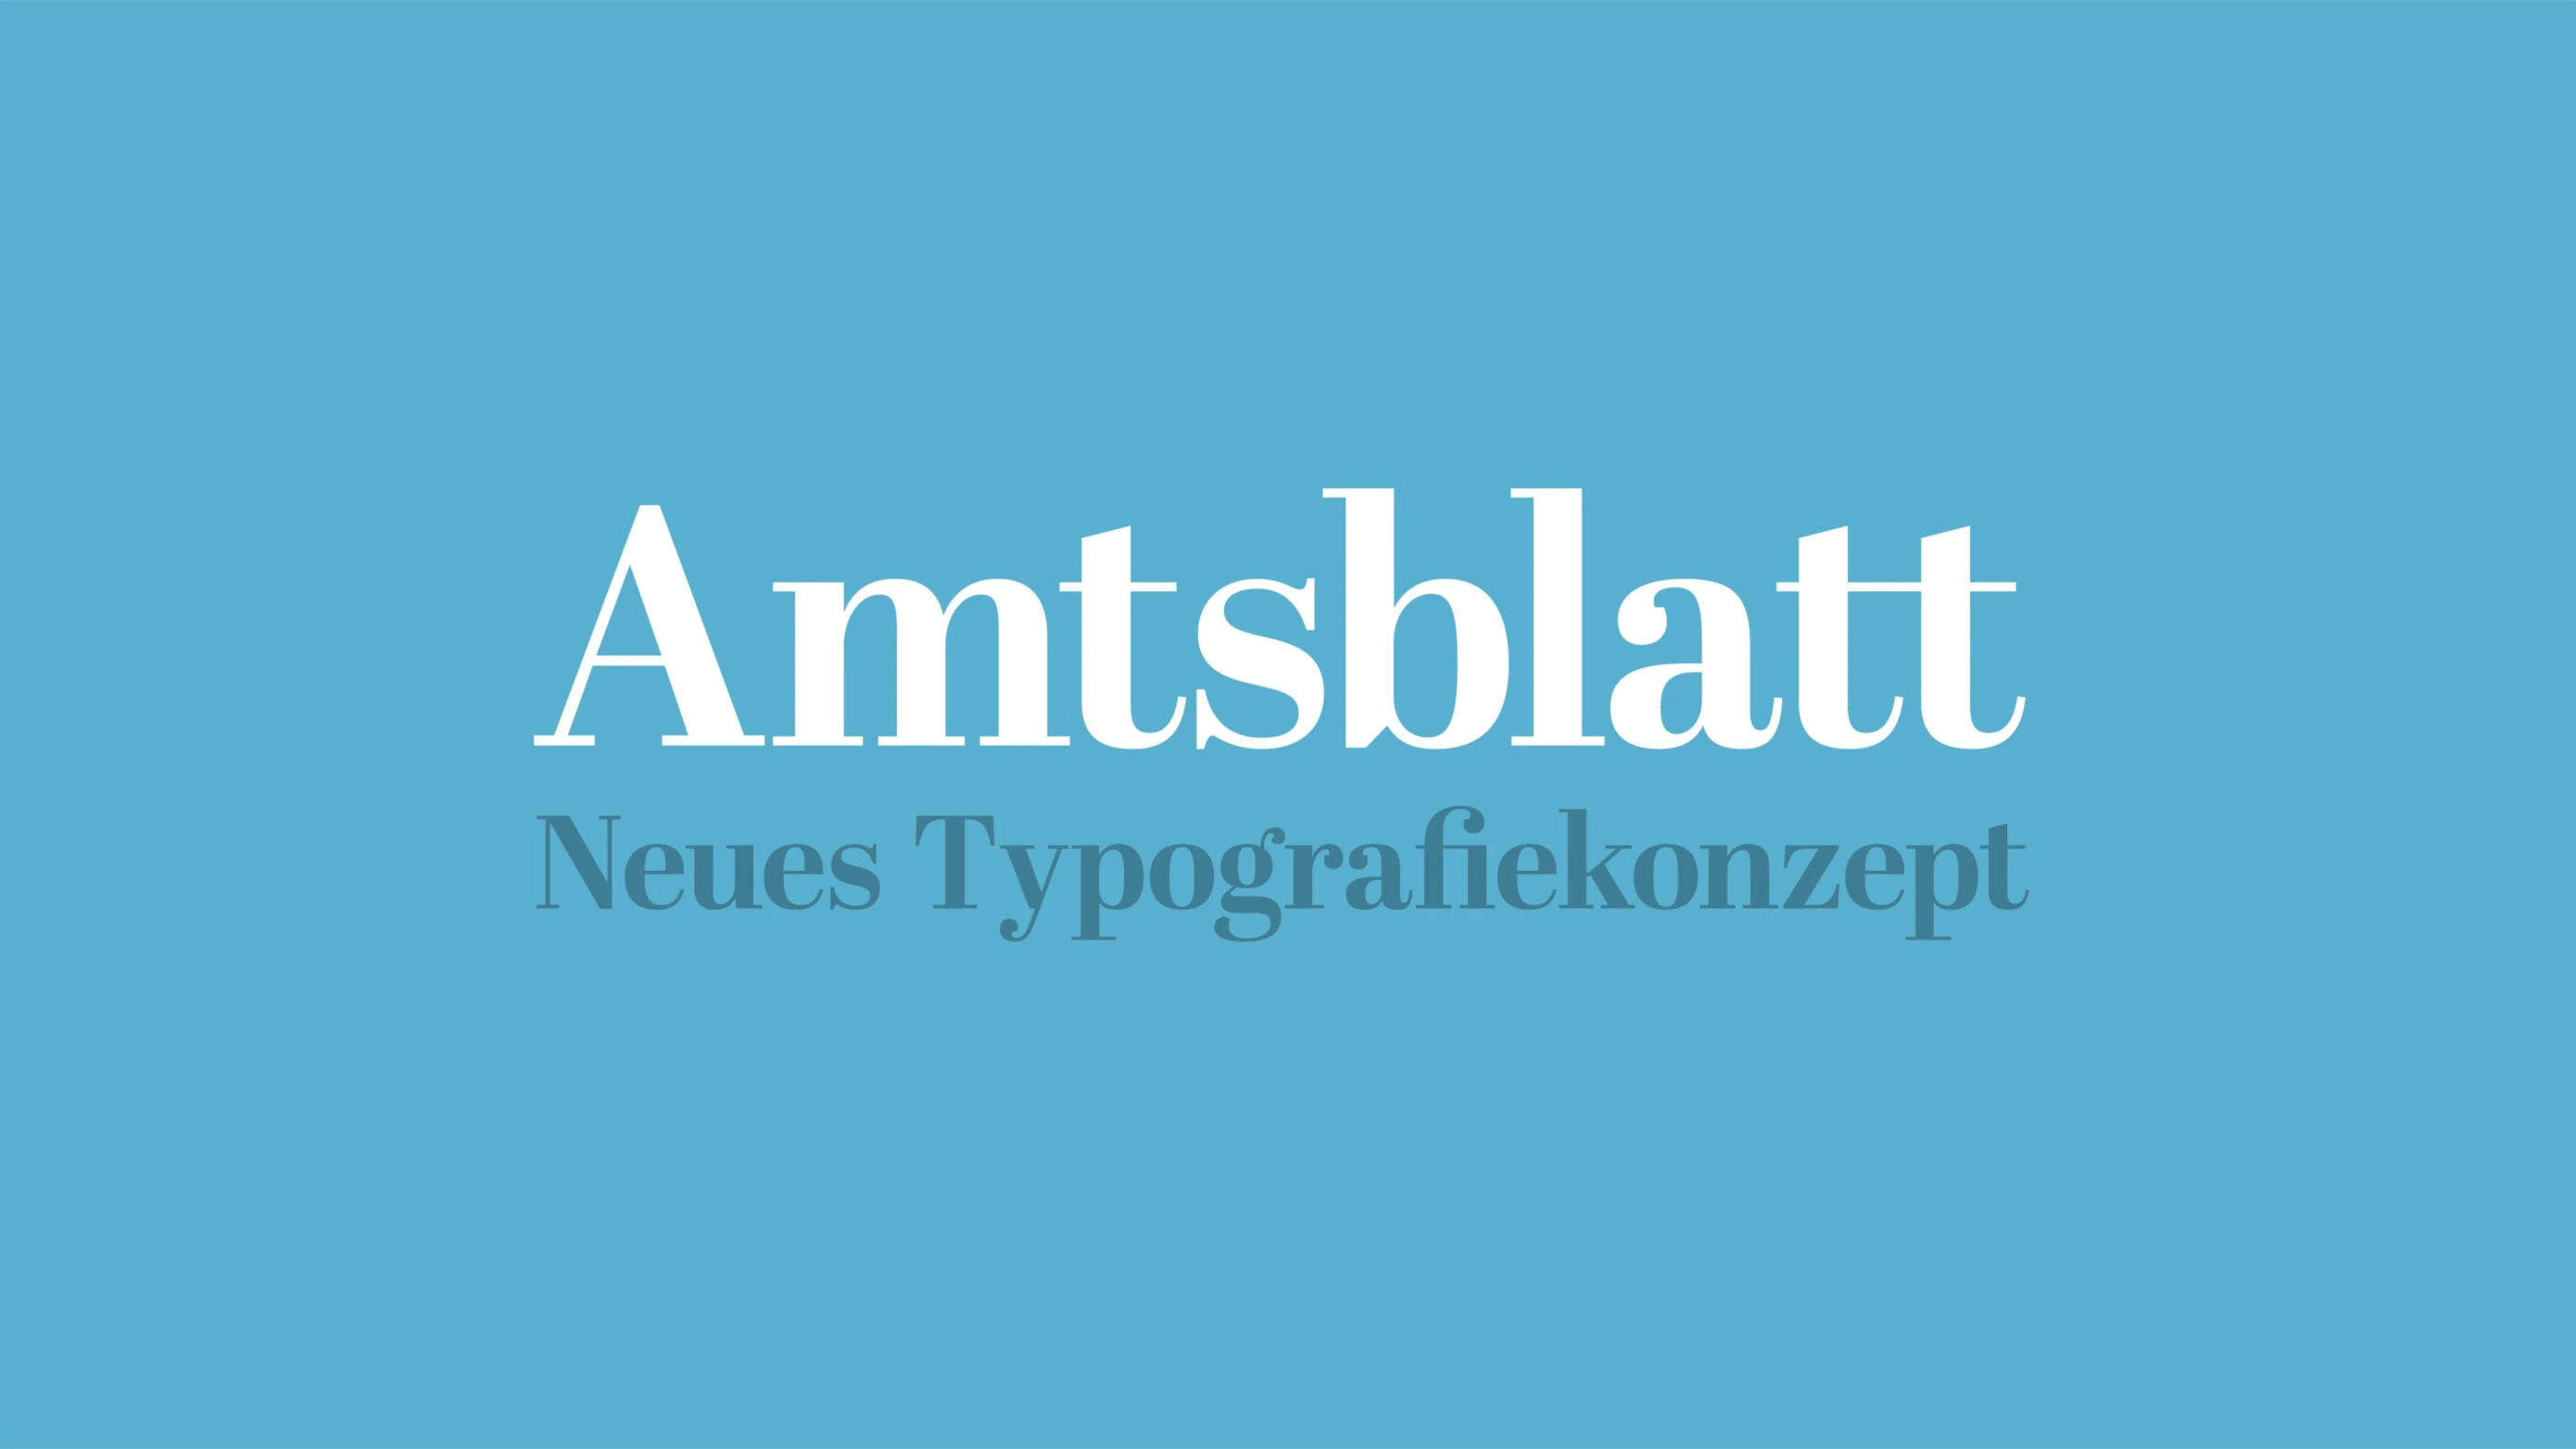 Amtsblatt Zug Typografie